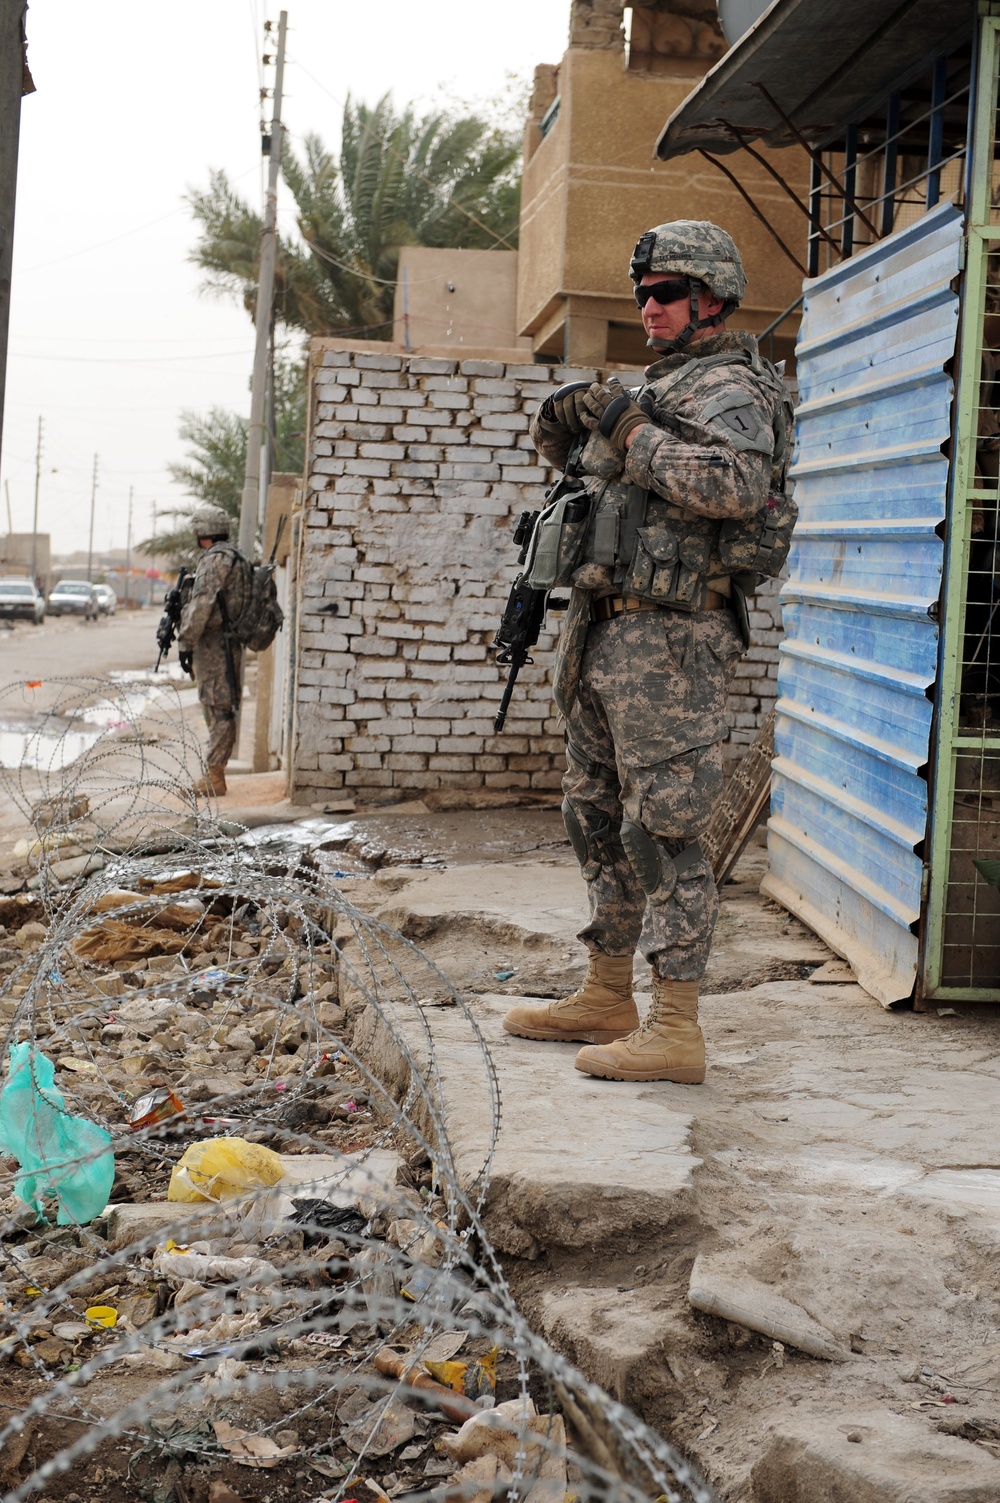 Baghdad patrol